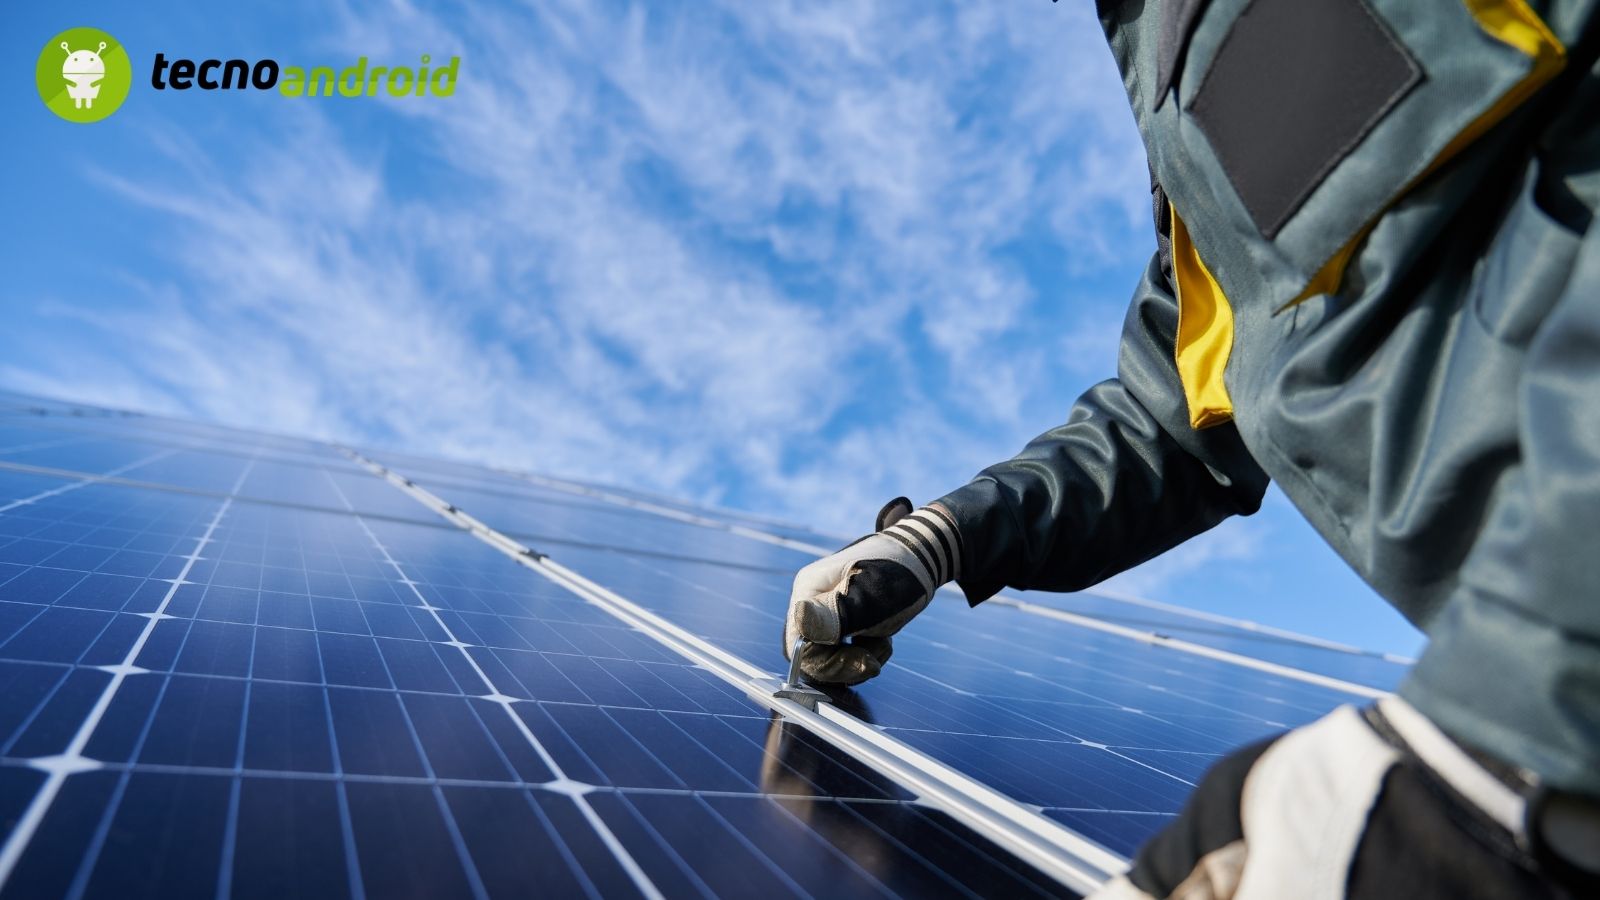 Il futuro del Fotovoltaico: tecnologie emergenti e sostenibilità ambientale